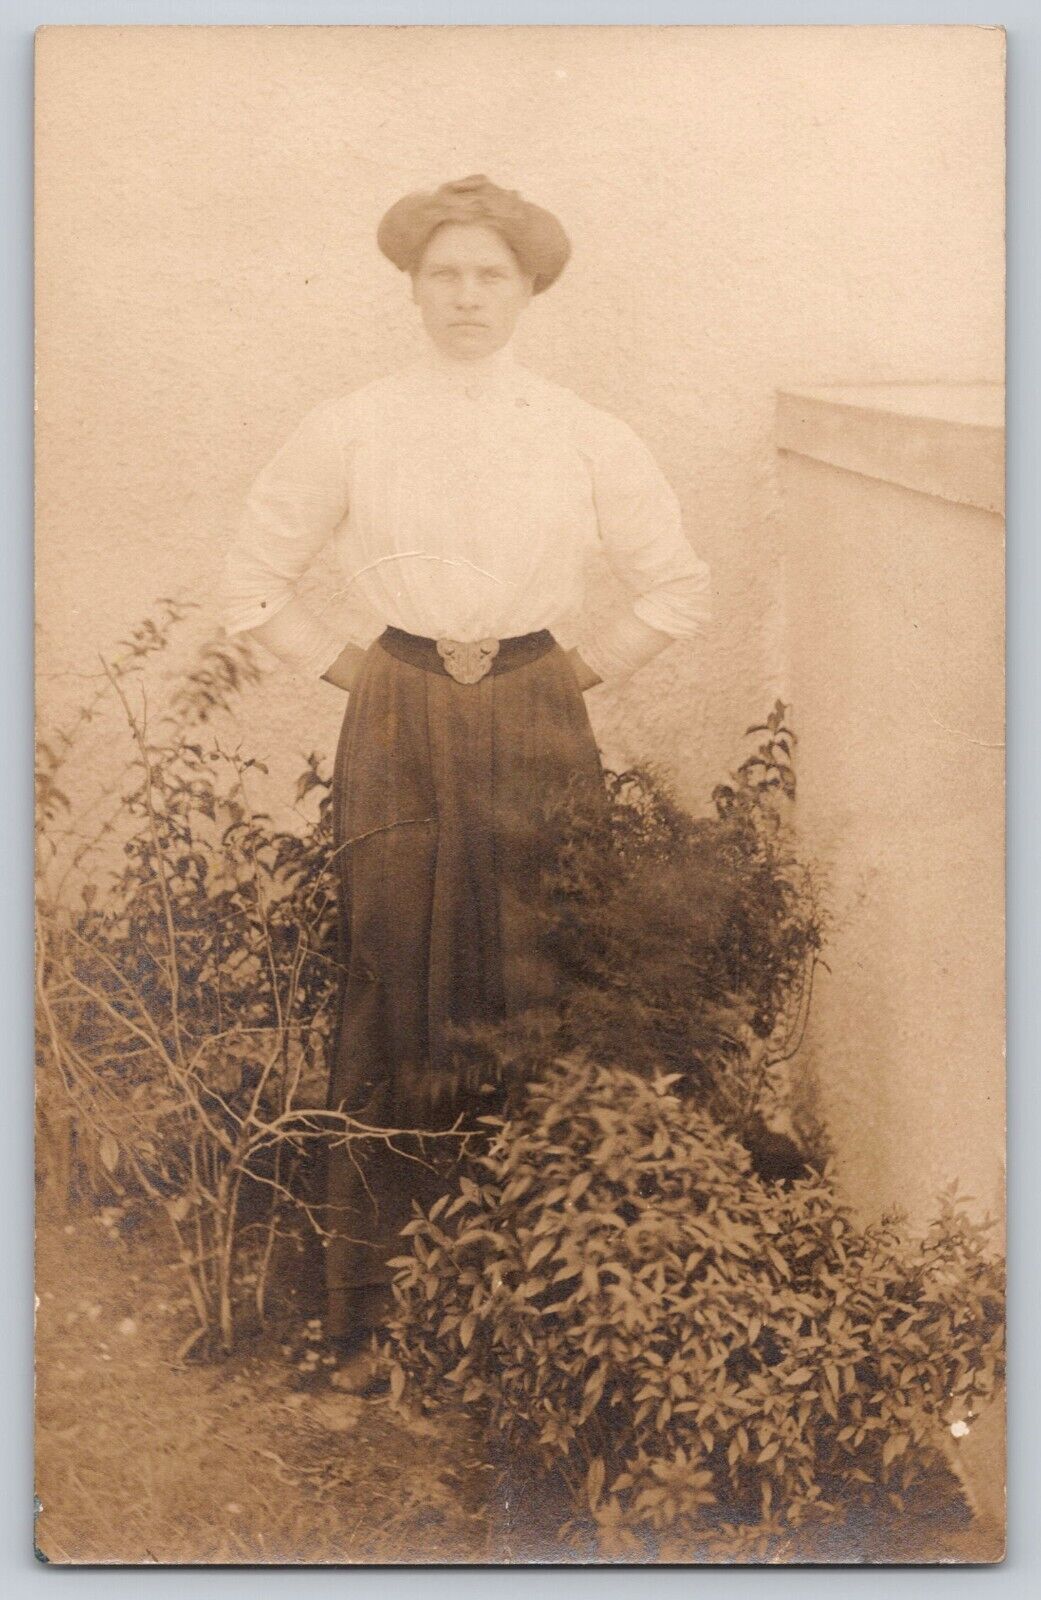 Postcard RPPC 1900s Stern Looking Woman Posing In Garden Portrait 1904-1918 Era